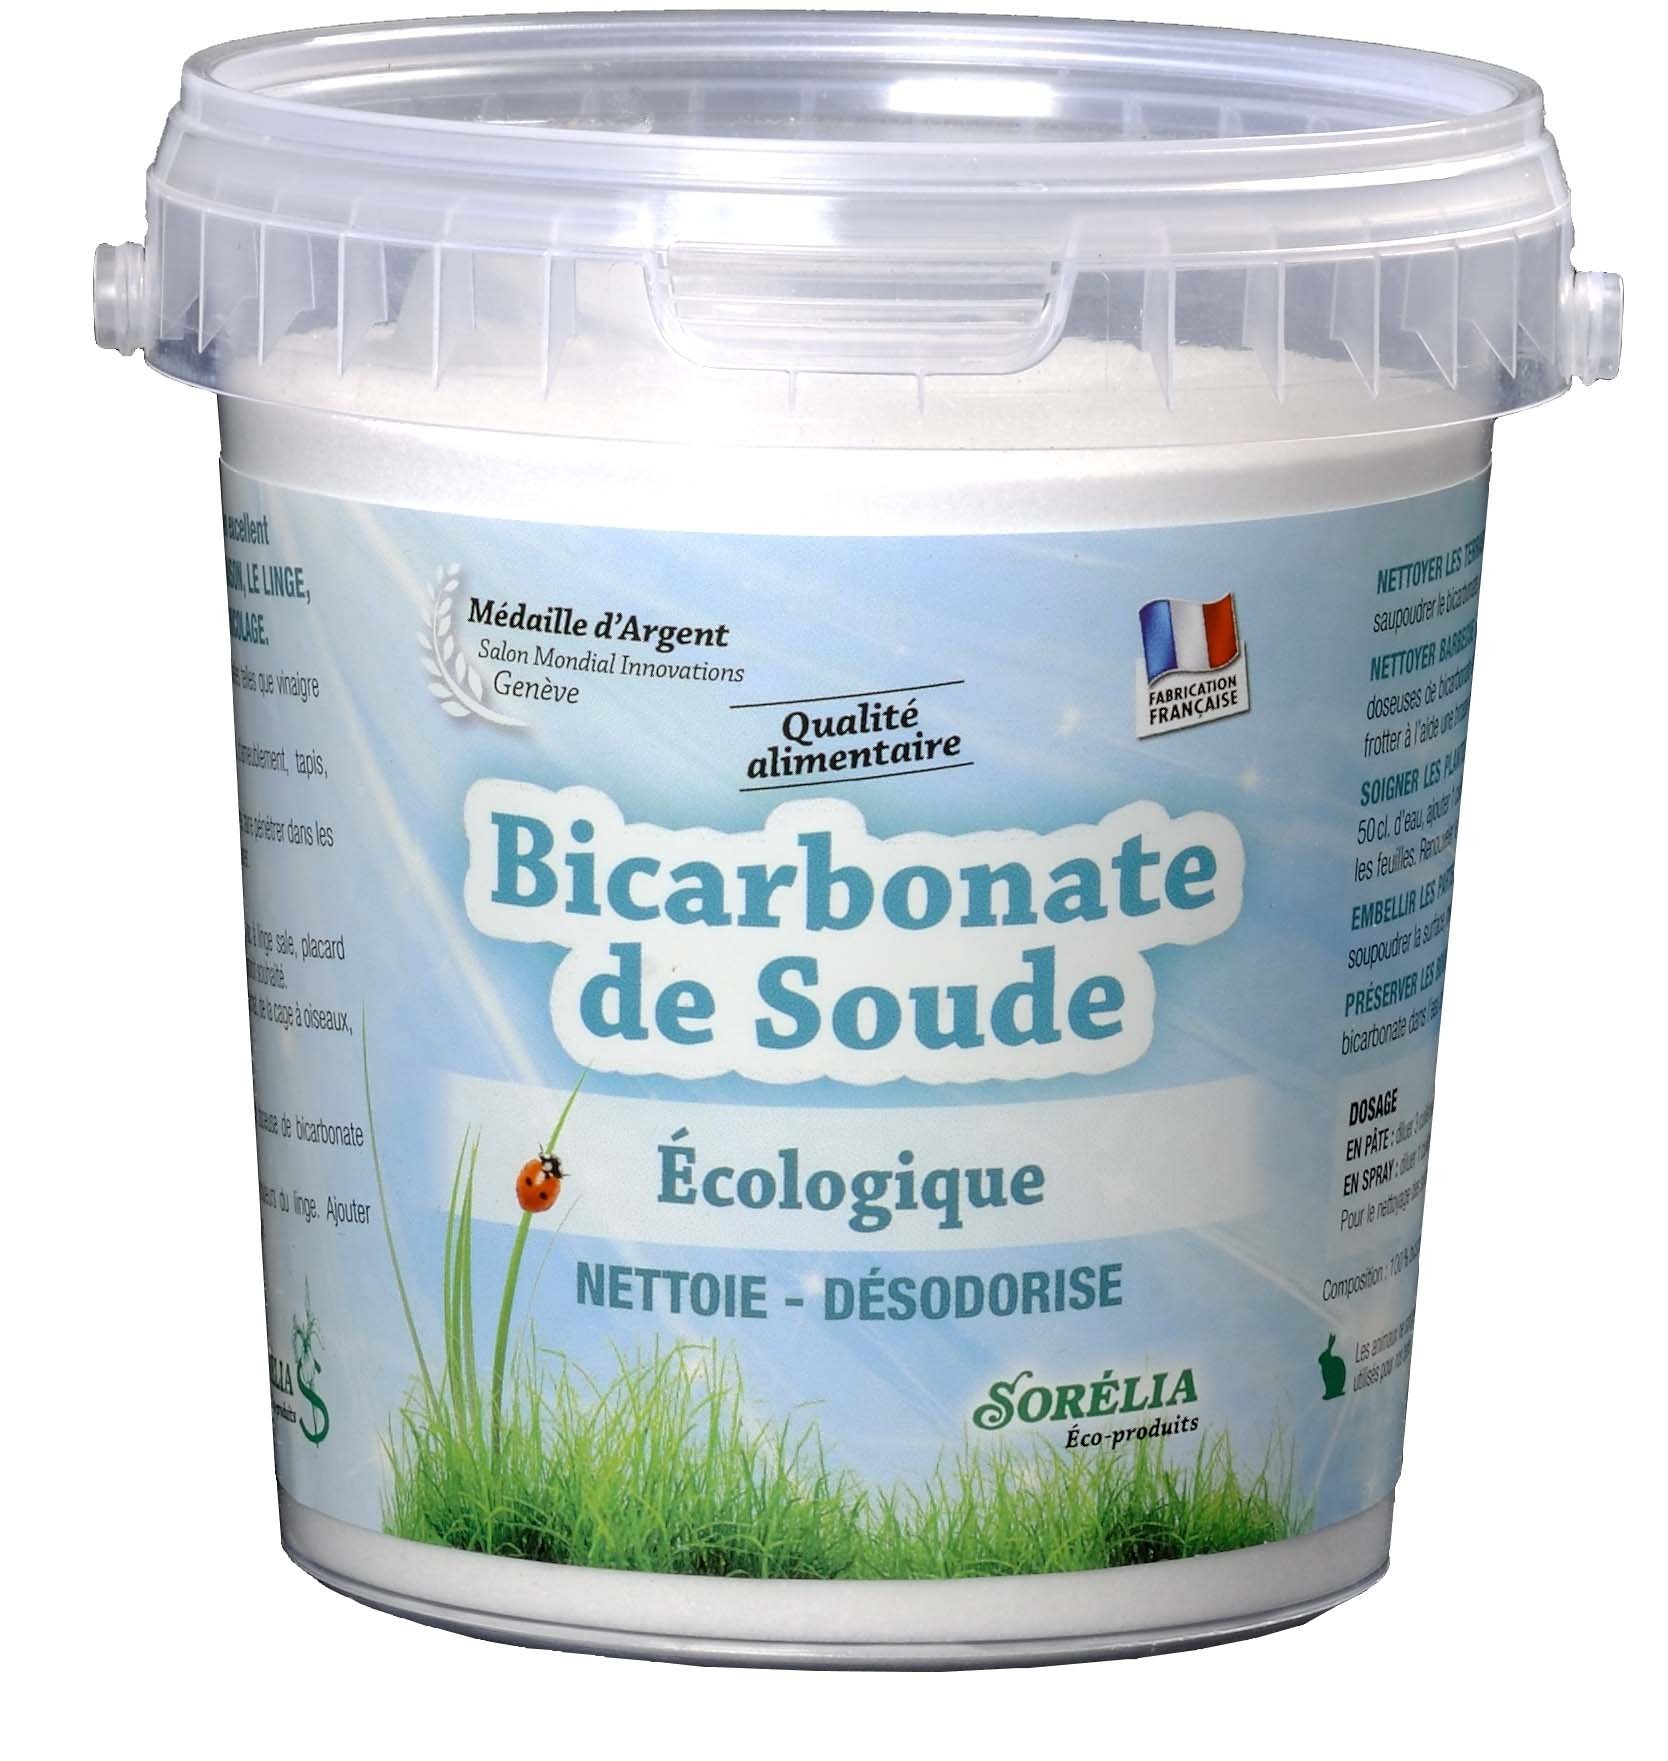 Bicarbonate de soude Selection